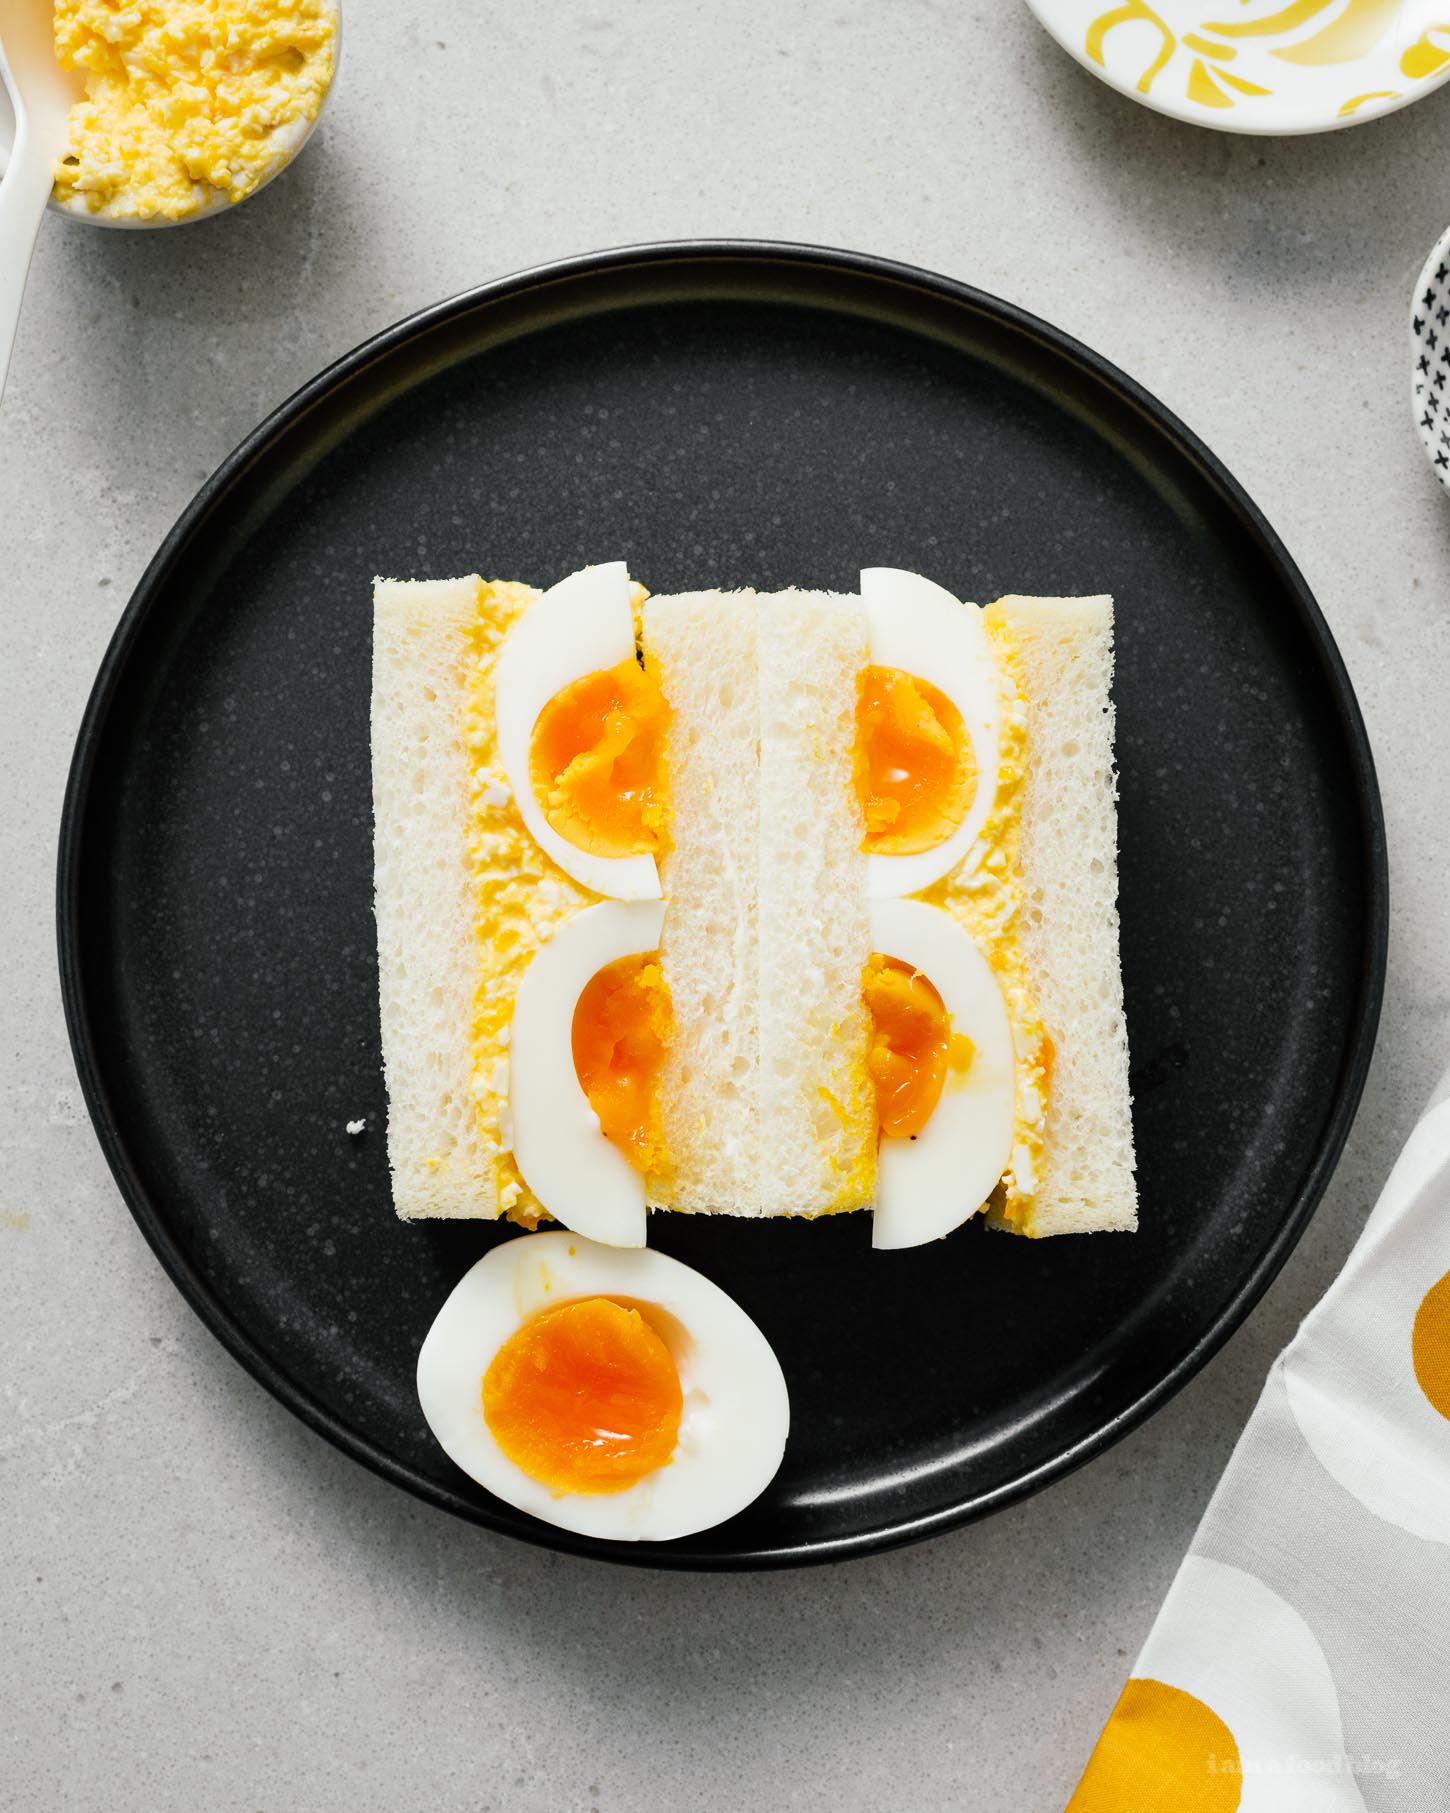 ¡Sándwiches de ensalada de huevo japonesa!  ¿Te encantan los sándwiches de ensalada de huevo pero quieres un toque diferente?  La mayonesa cremosa de kewpie y los huevos confitados hacen de este sándwich un ganador.  Como los sándwiches que comiste de vacaciones en Japón pero mejor;) #sandwiches #eggsalad #japanese #japanesefood #recipes #recipeoftheday #eggs